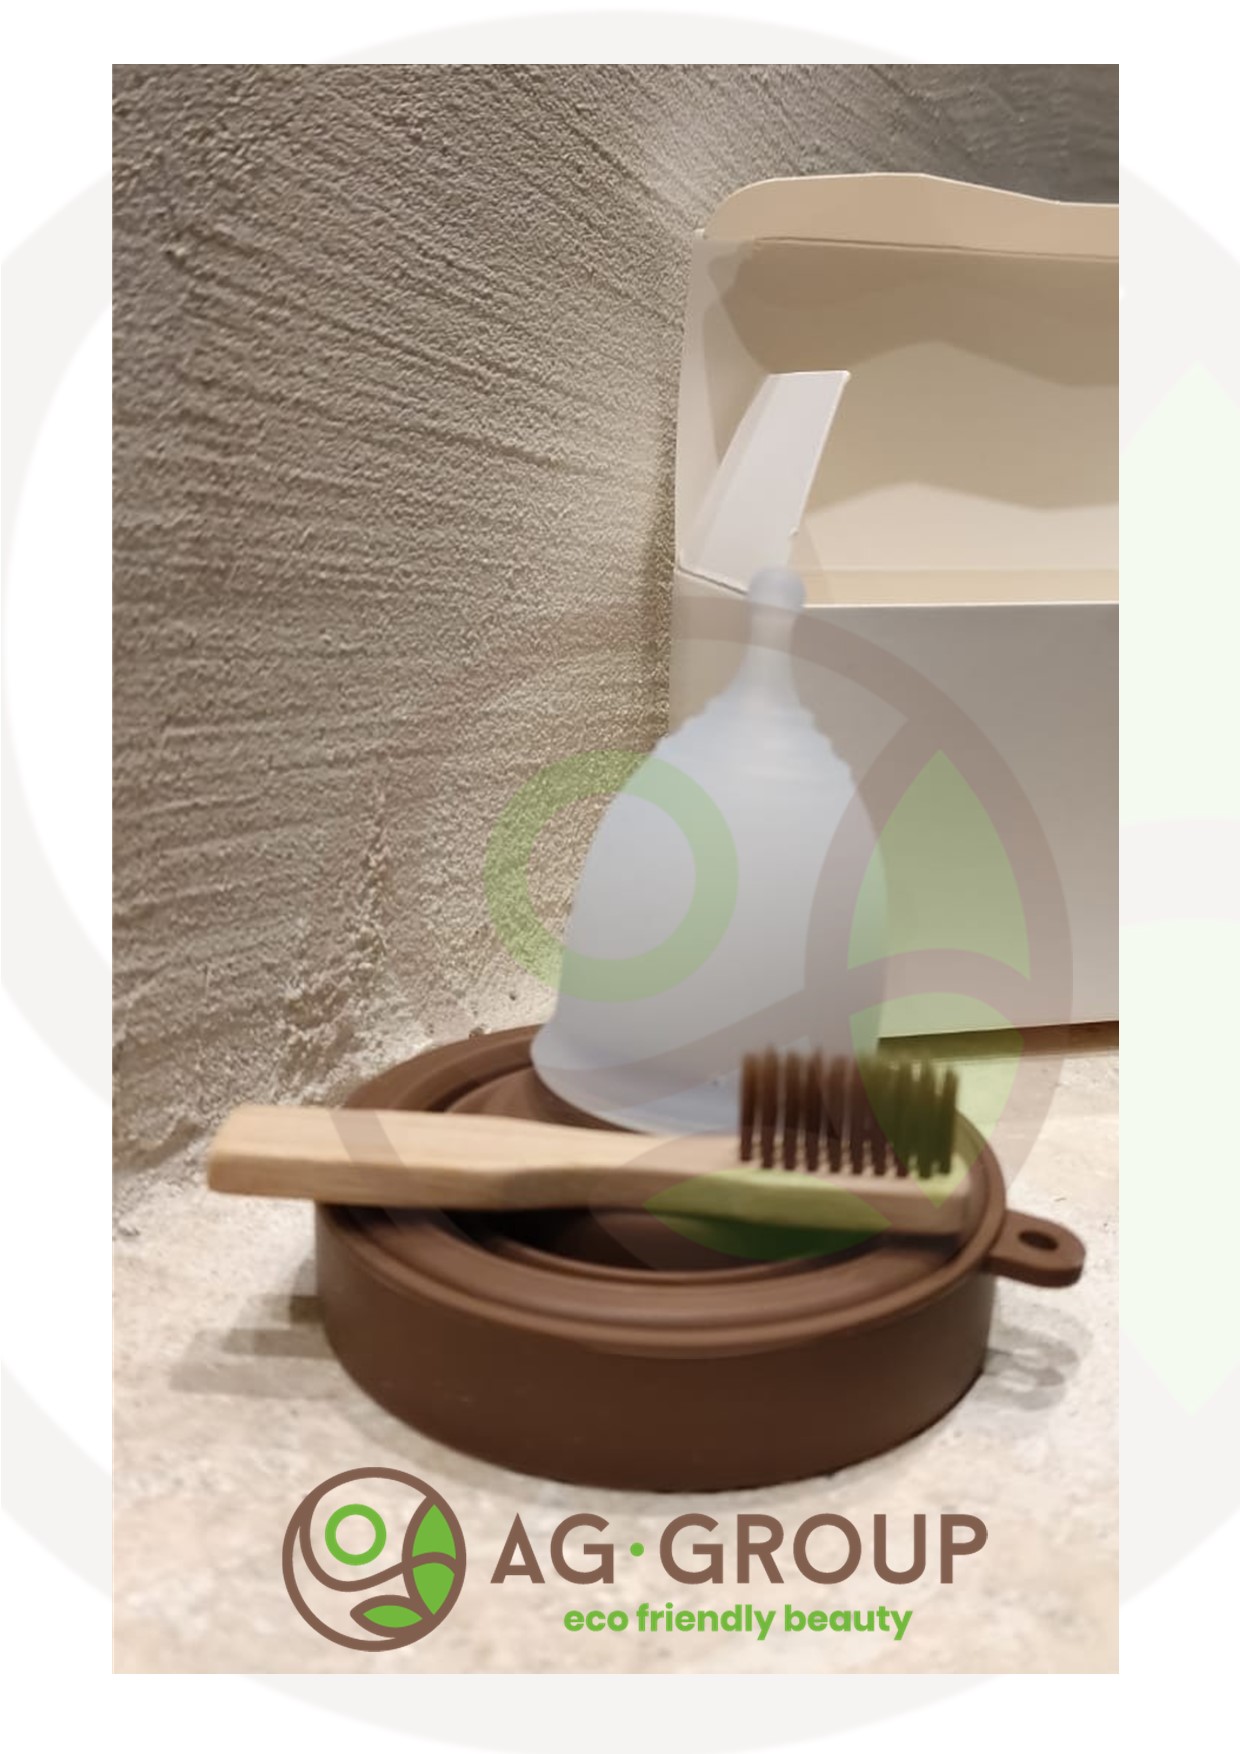 Featured image for “Coppetta mestruale con contenitore e spazzolino in bambu'”